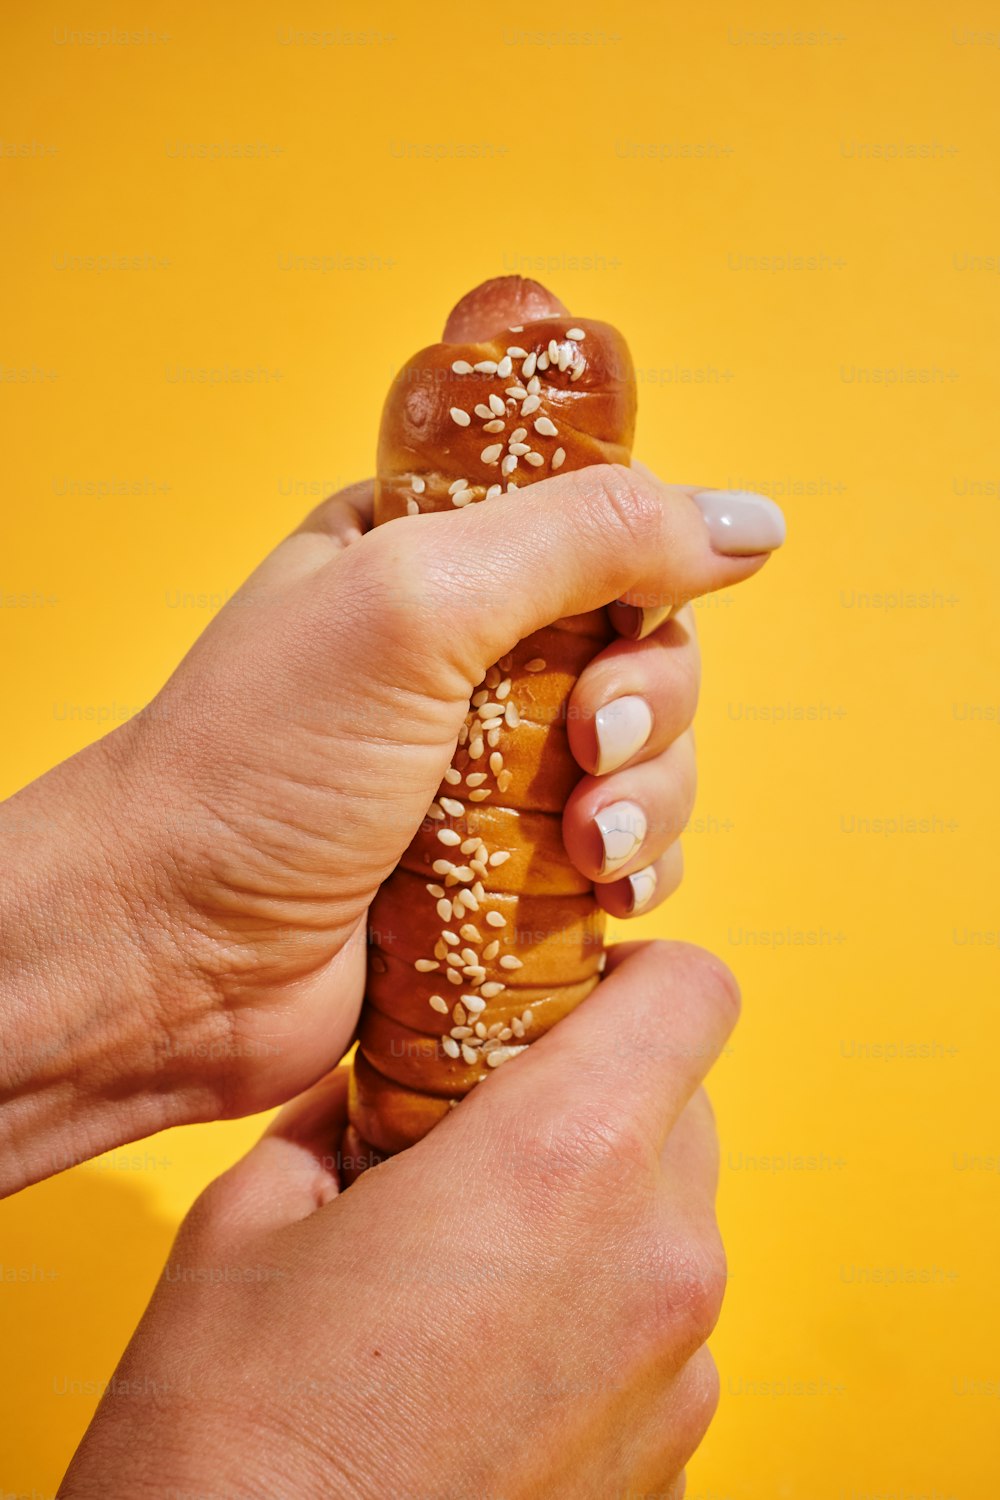 Una persona sosteniendo un pretzel en la mano